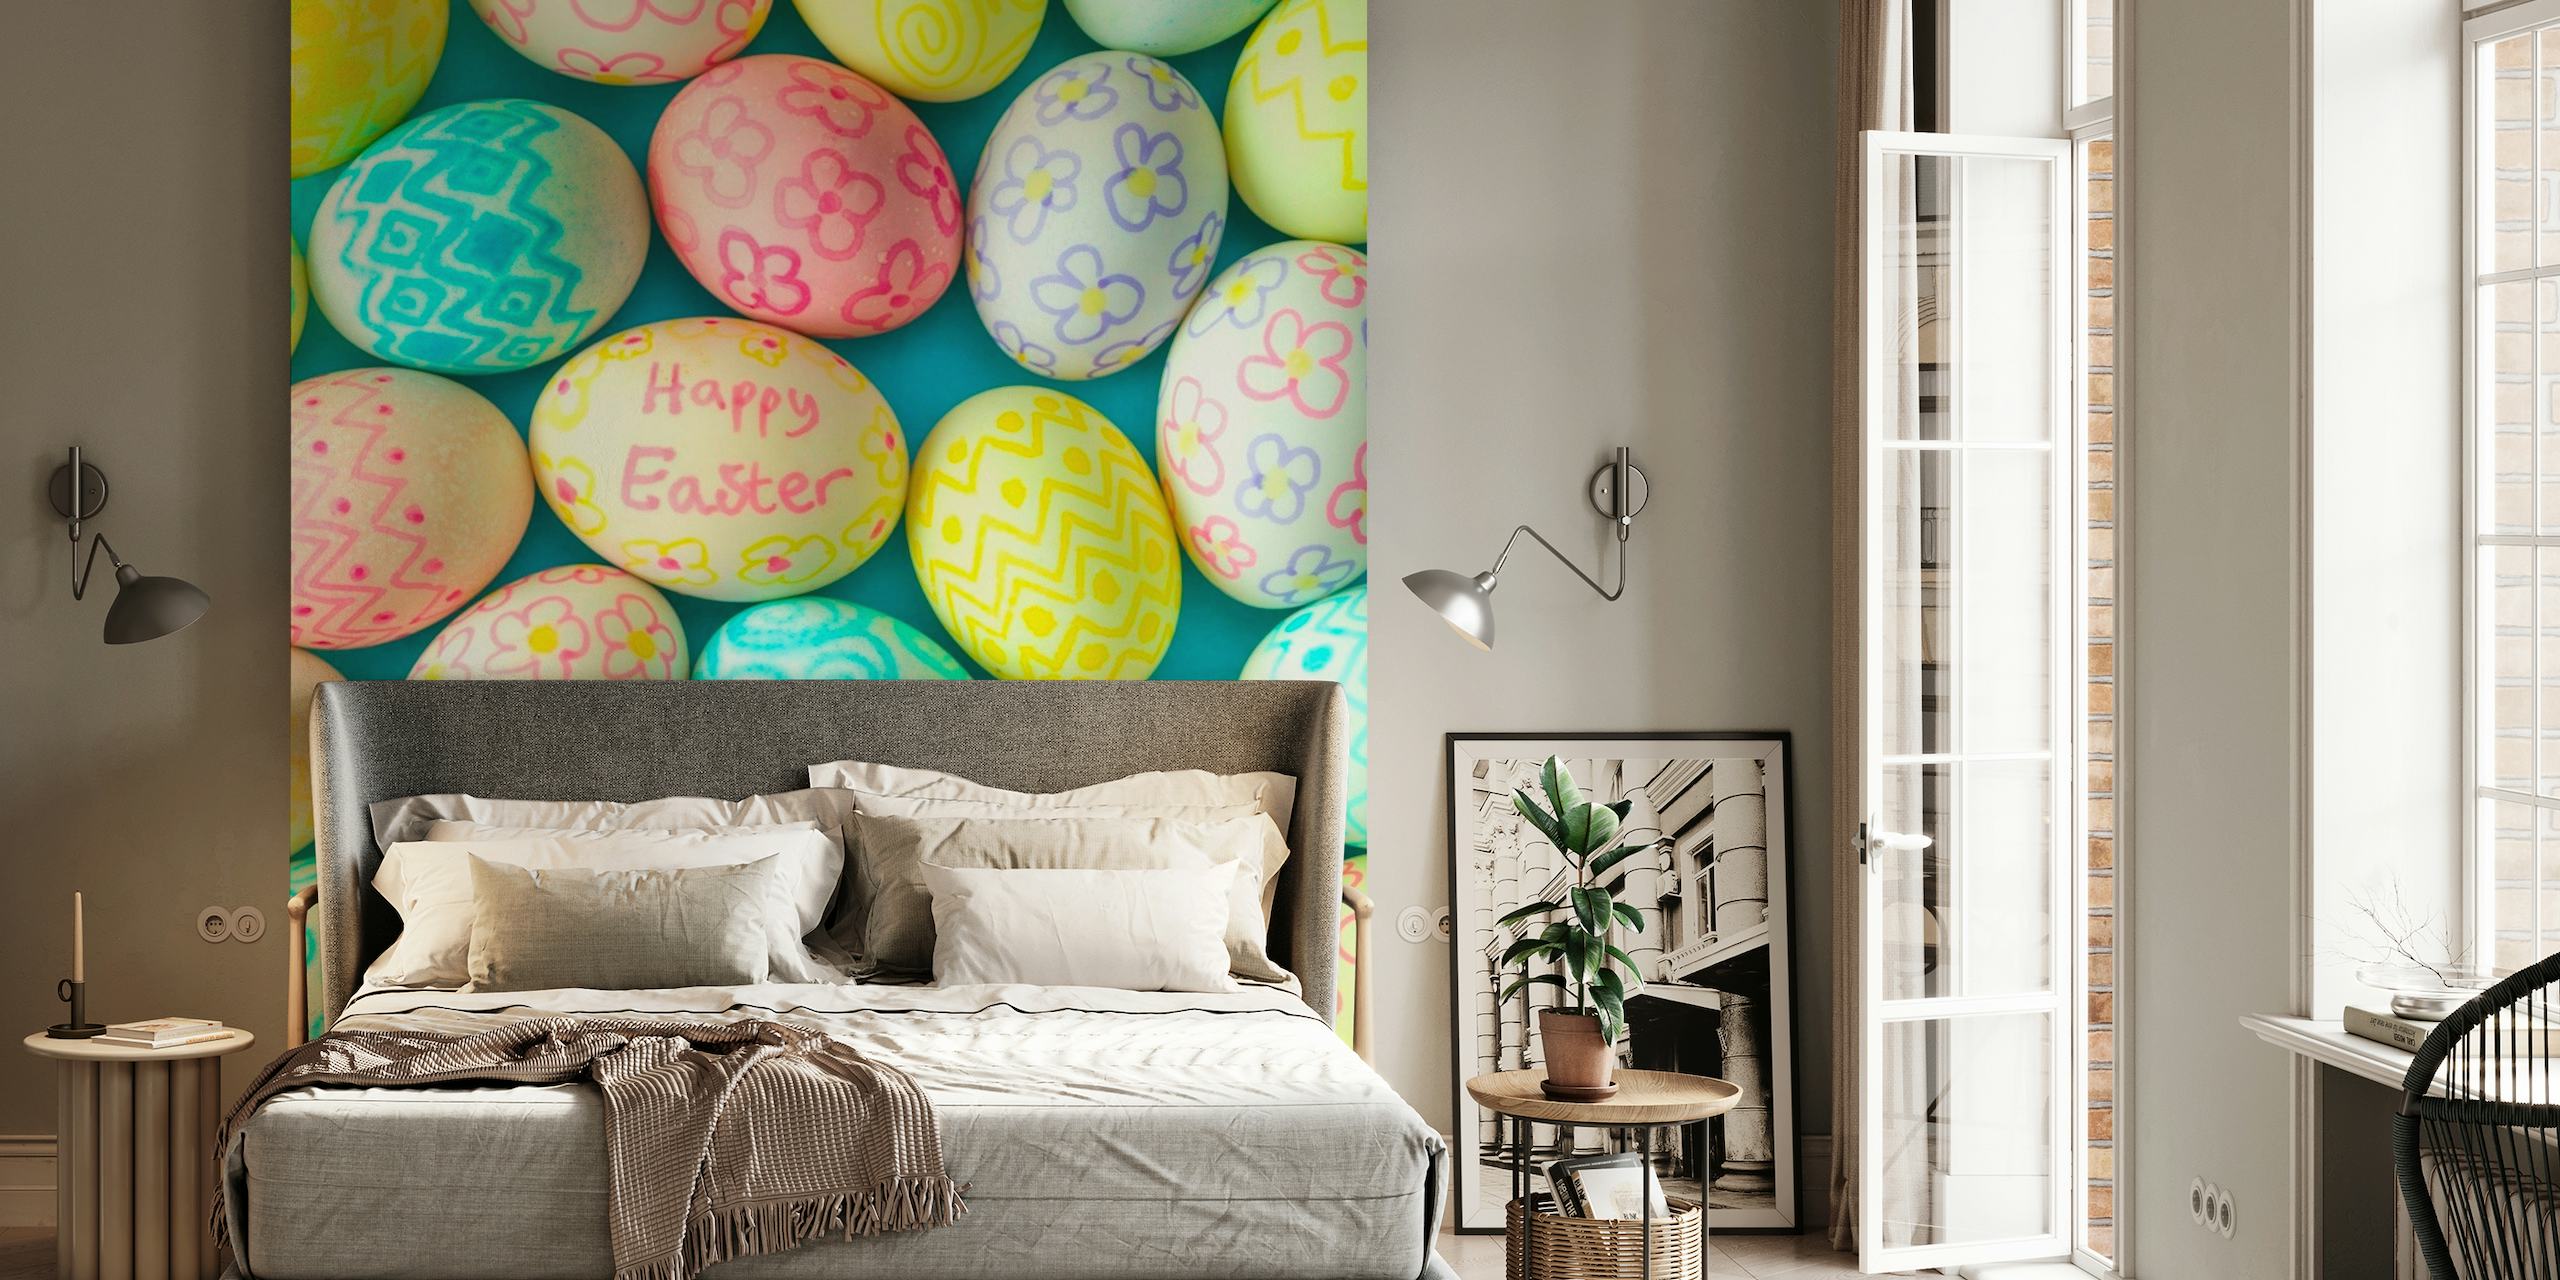 Easter Eggs papel pintado